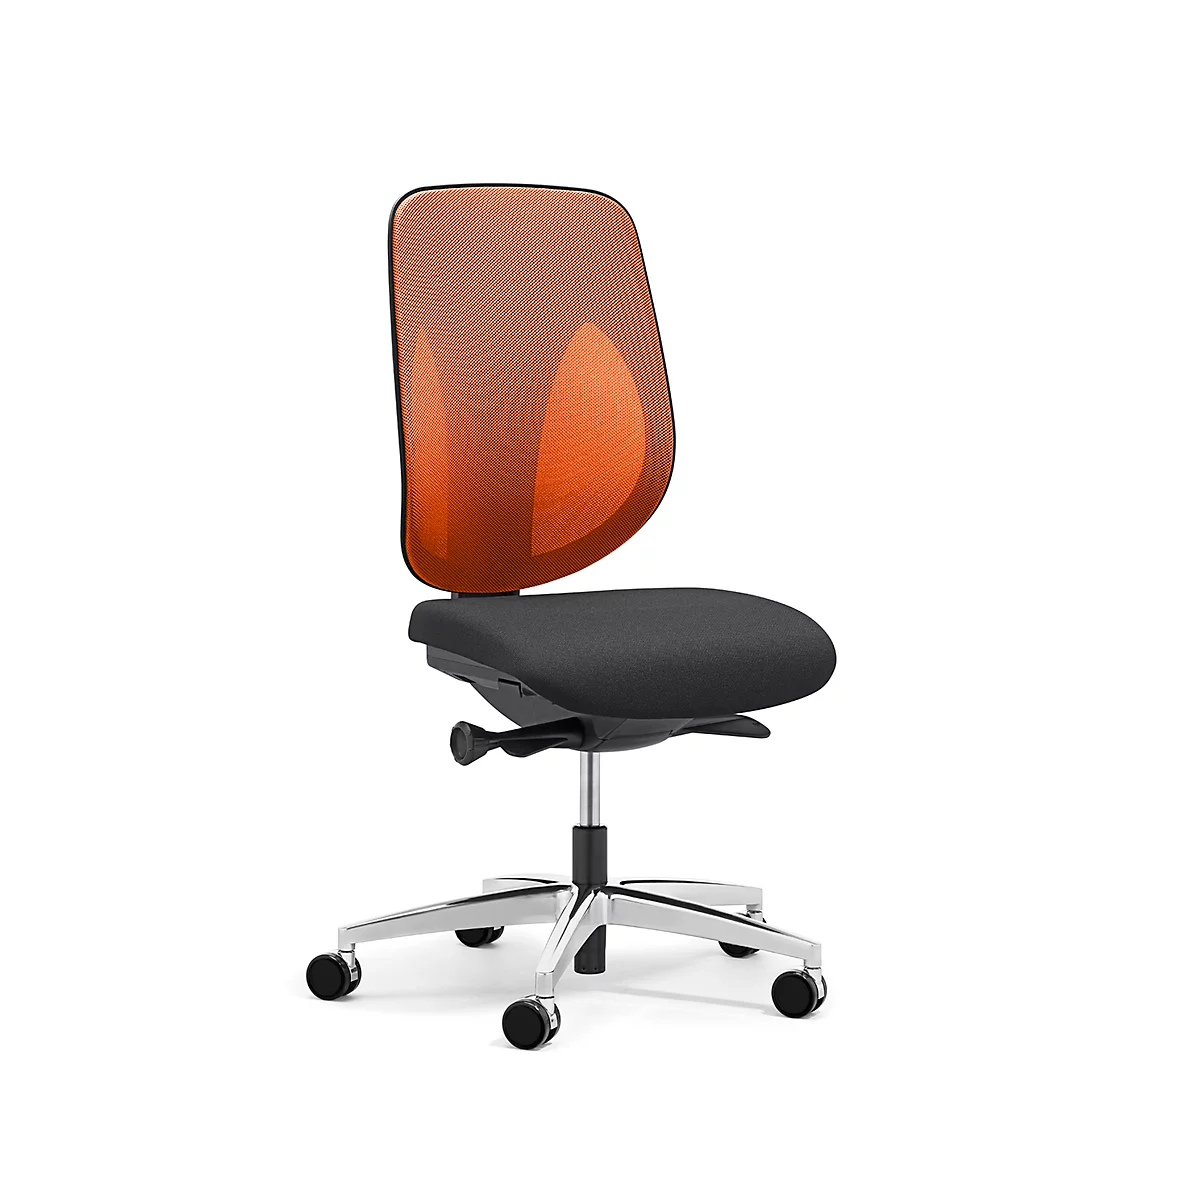 Giroflex Bürostuhl 353, ohne Armlehnen, Auto-Synchronmechanik, Muldensitz, 3D-Netz-Rückenlehne, orange/schwarz/alusilber